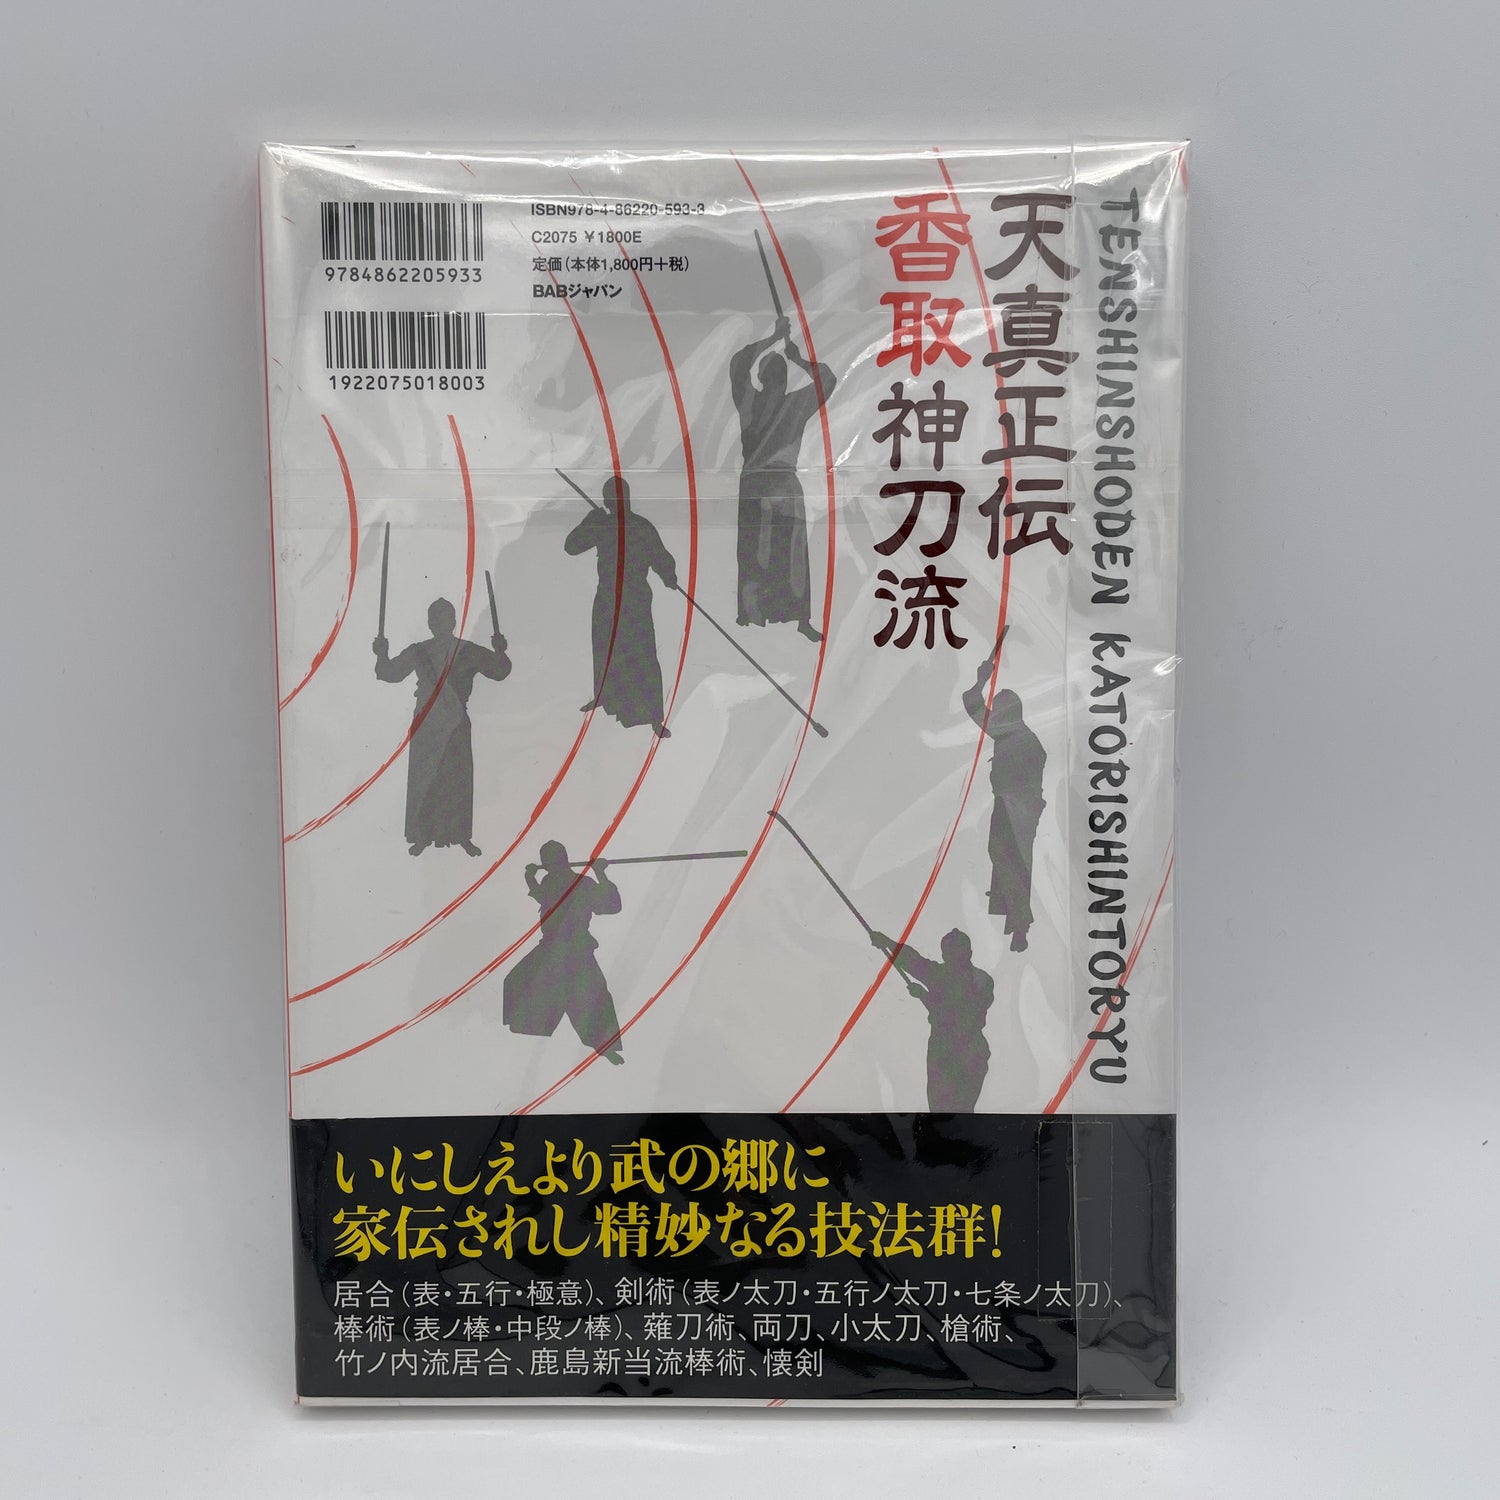 Libro Tenshin Shoden Katori Shinto Ryu de Munenori Shiigi (usado)